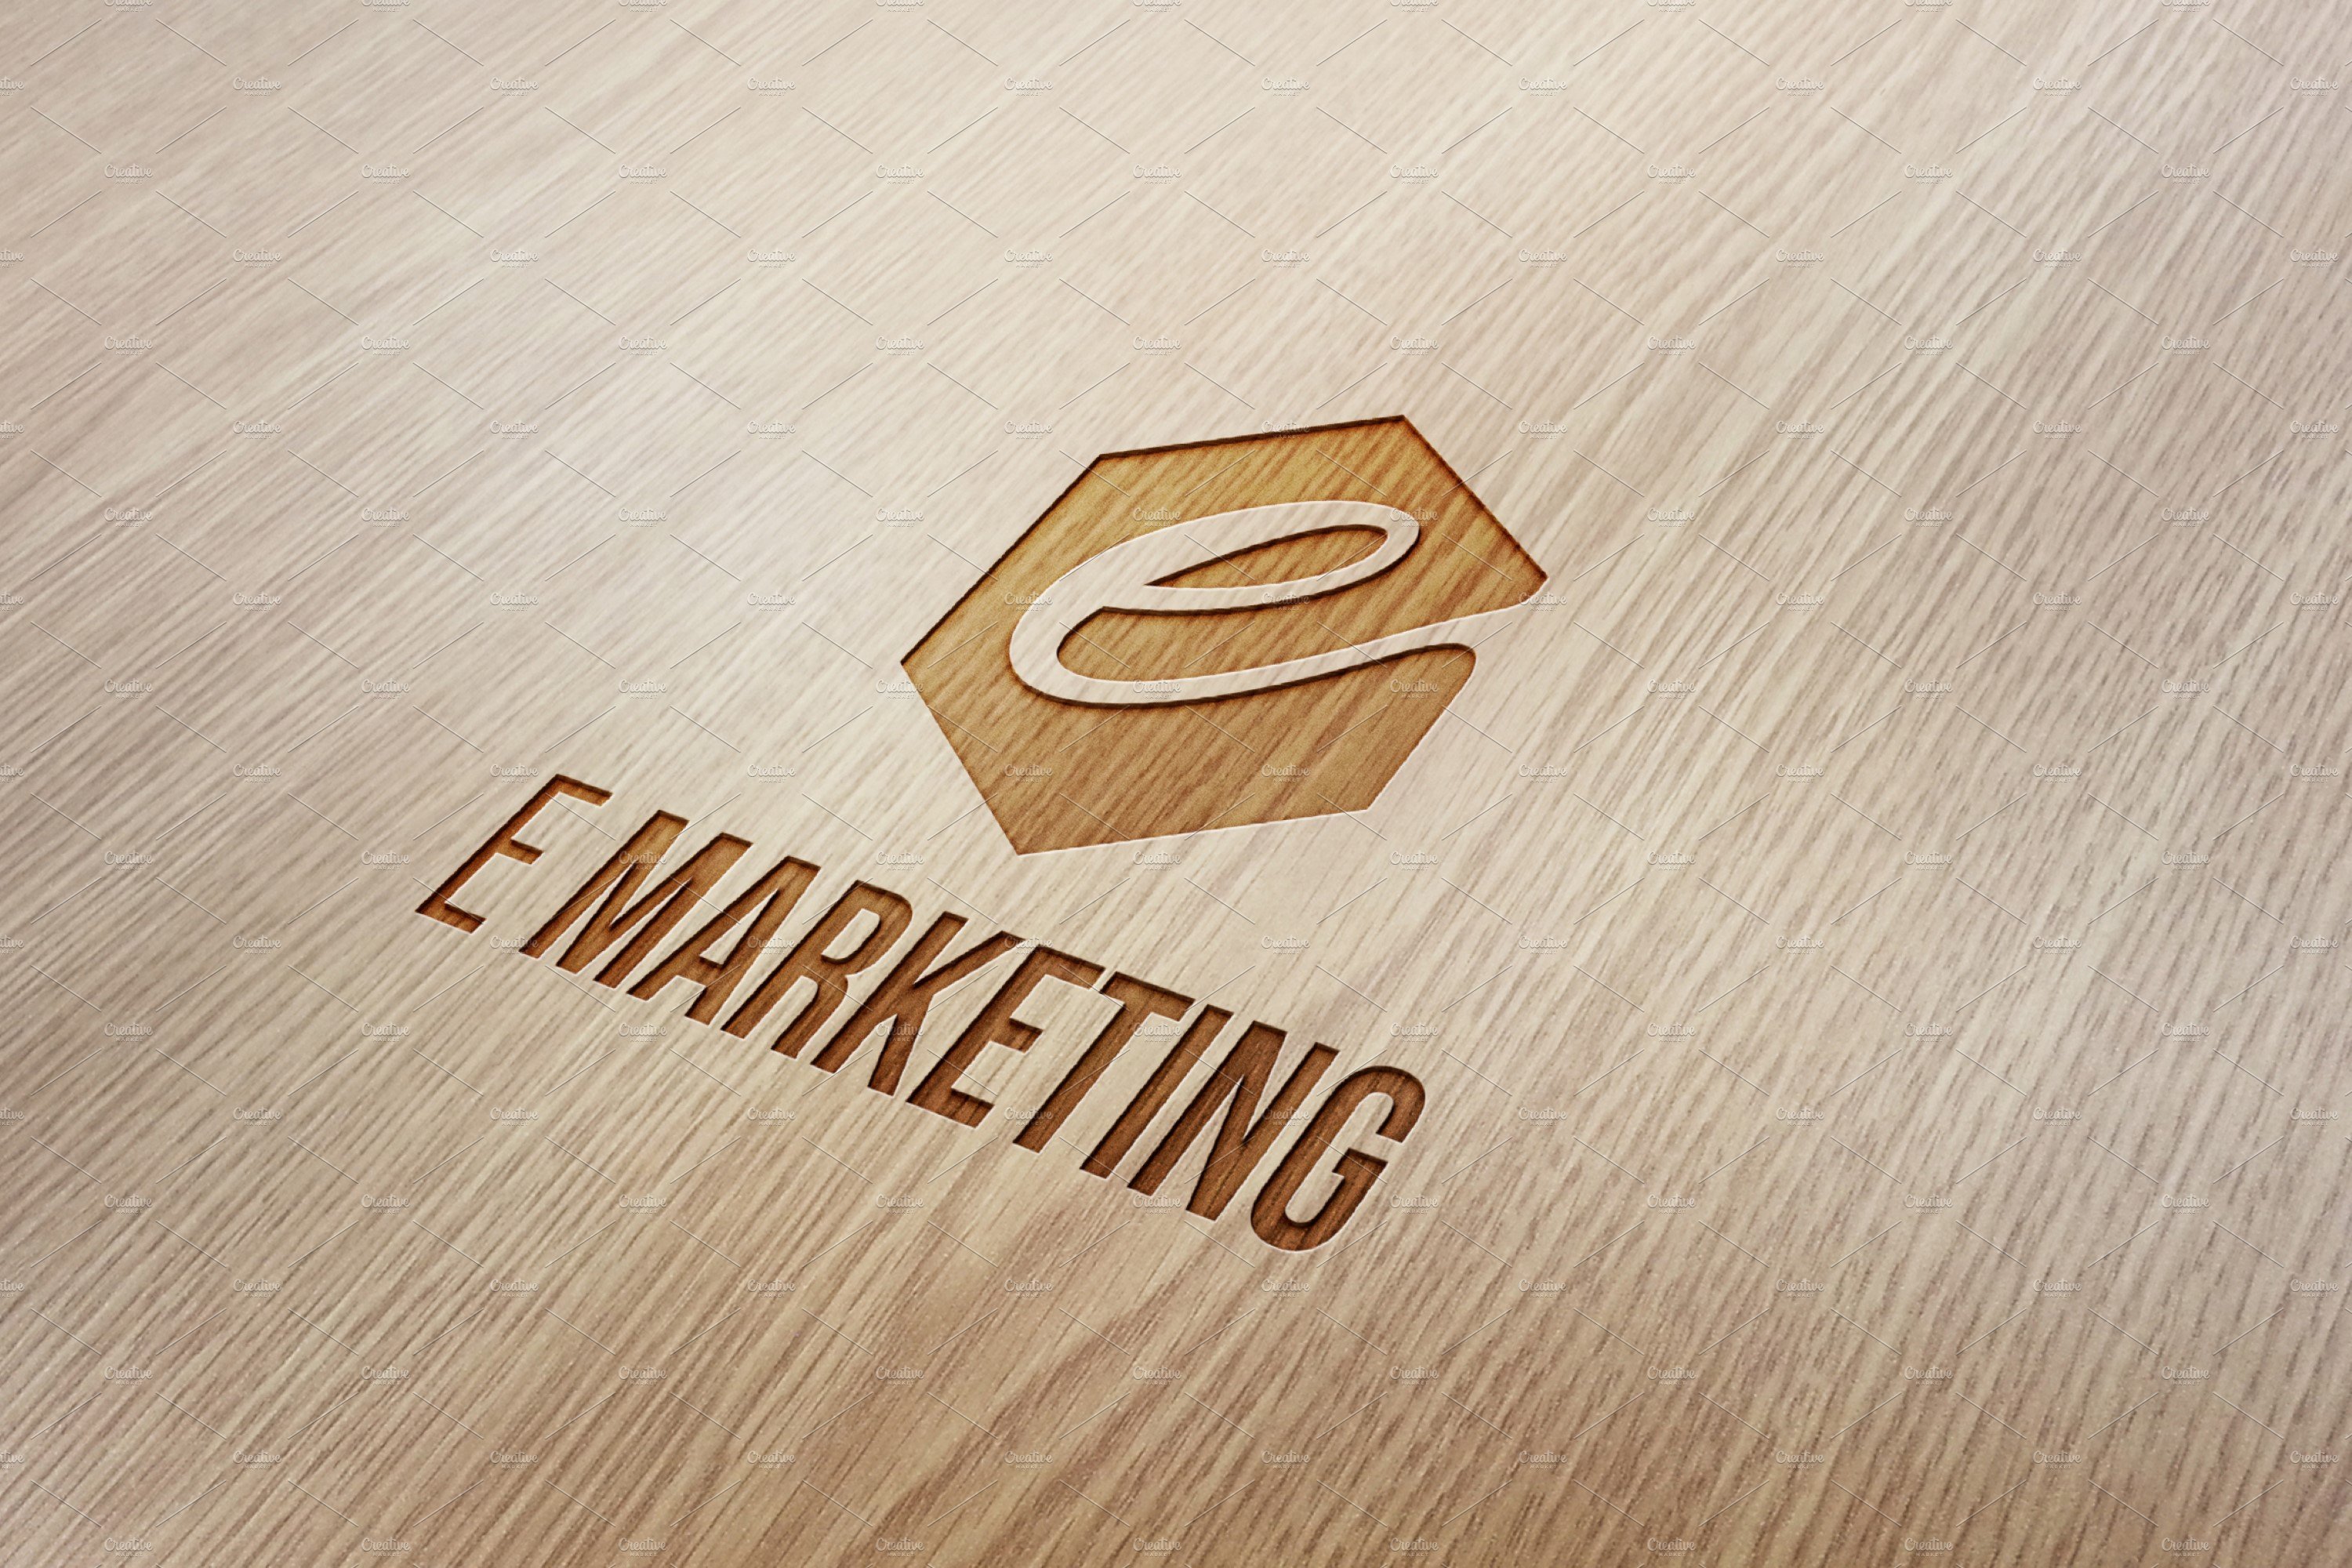 126 e marketing wood engraved logo mockup 279